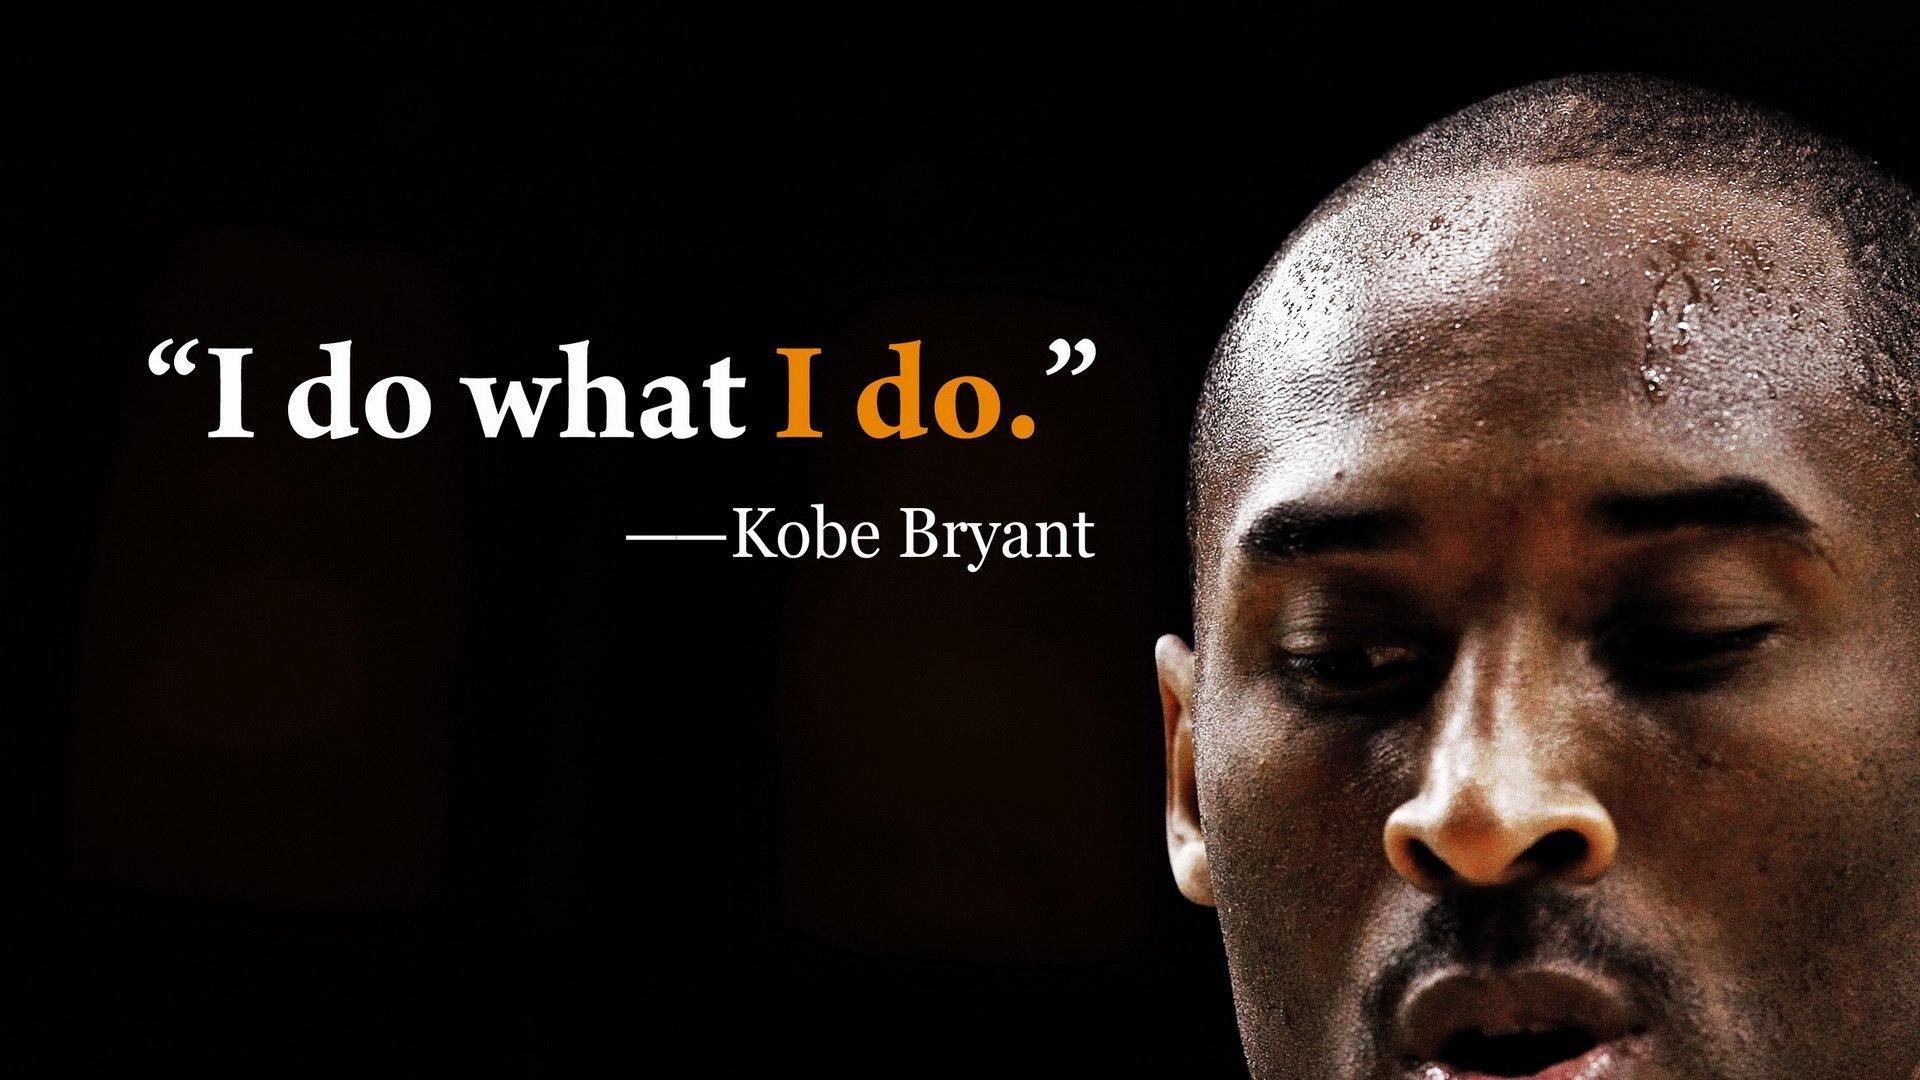 kobe bryant wallpaper full HD. Kobe bryant quotes, Kobe quotes, Kobe